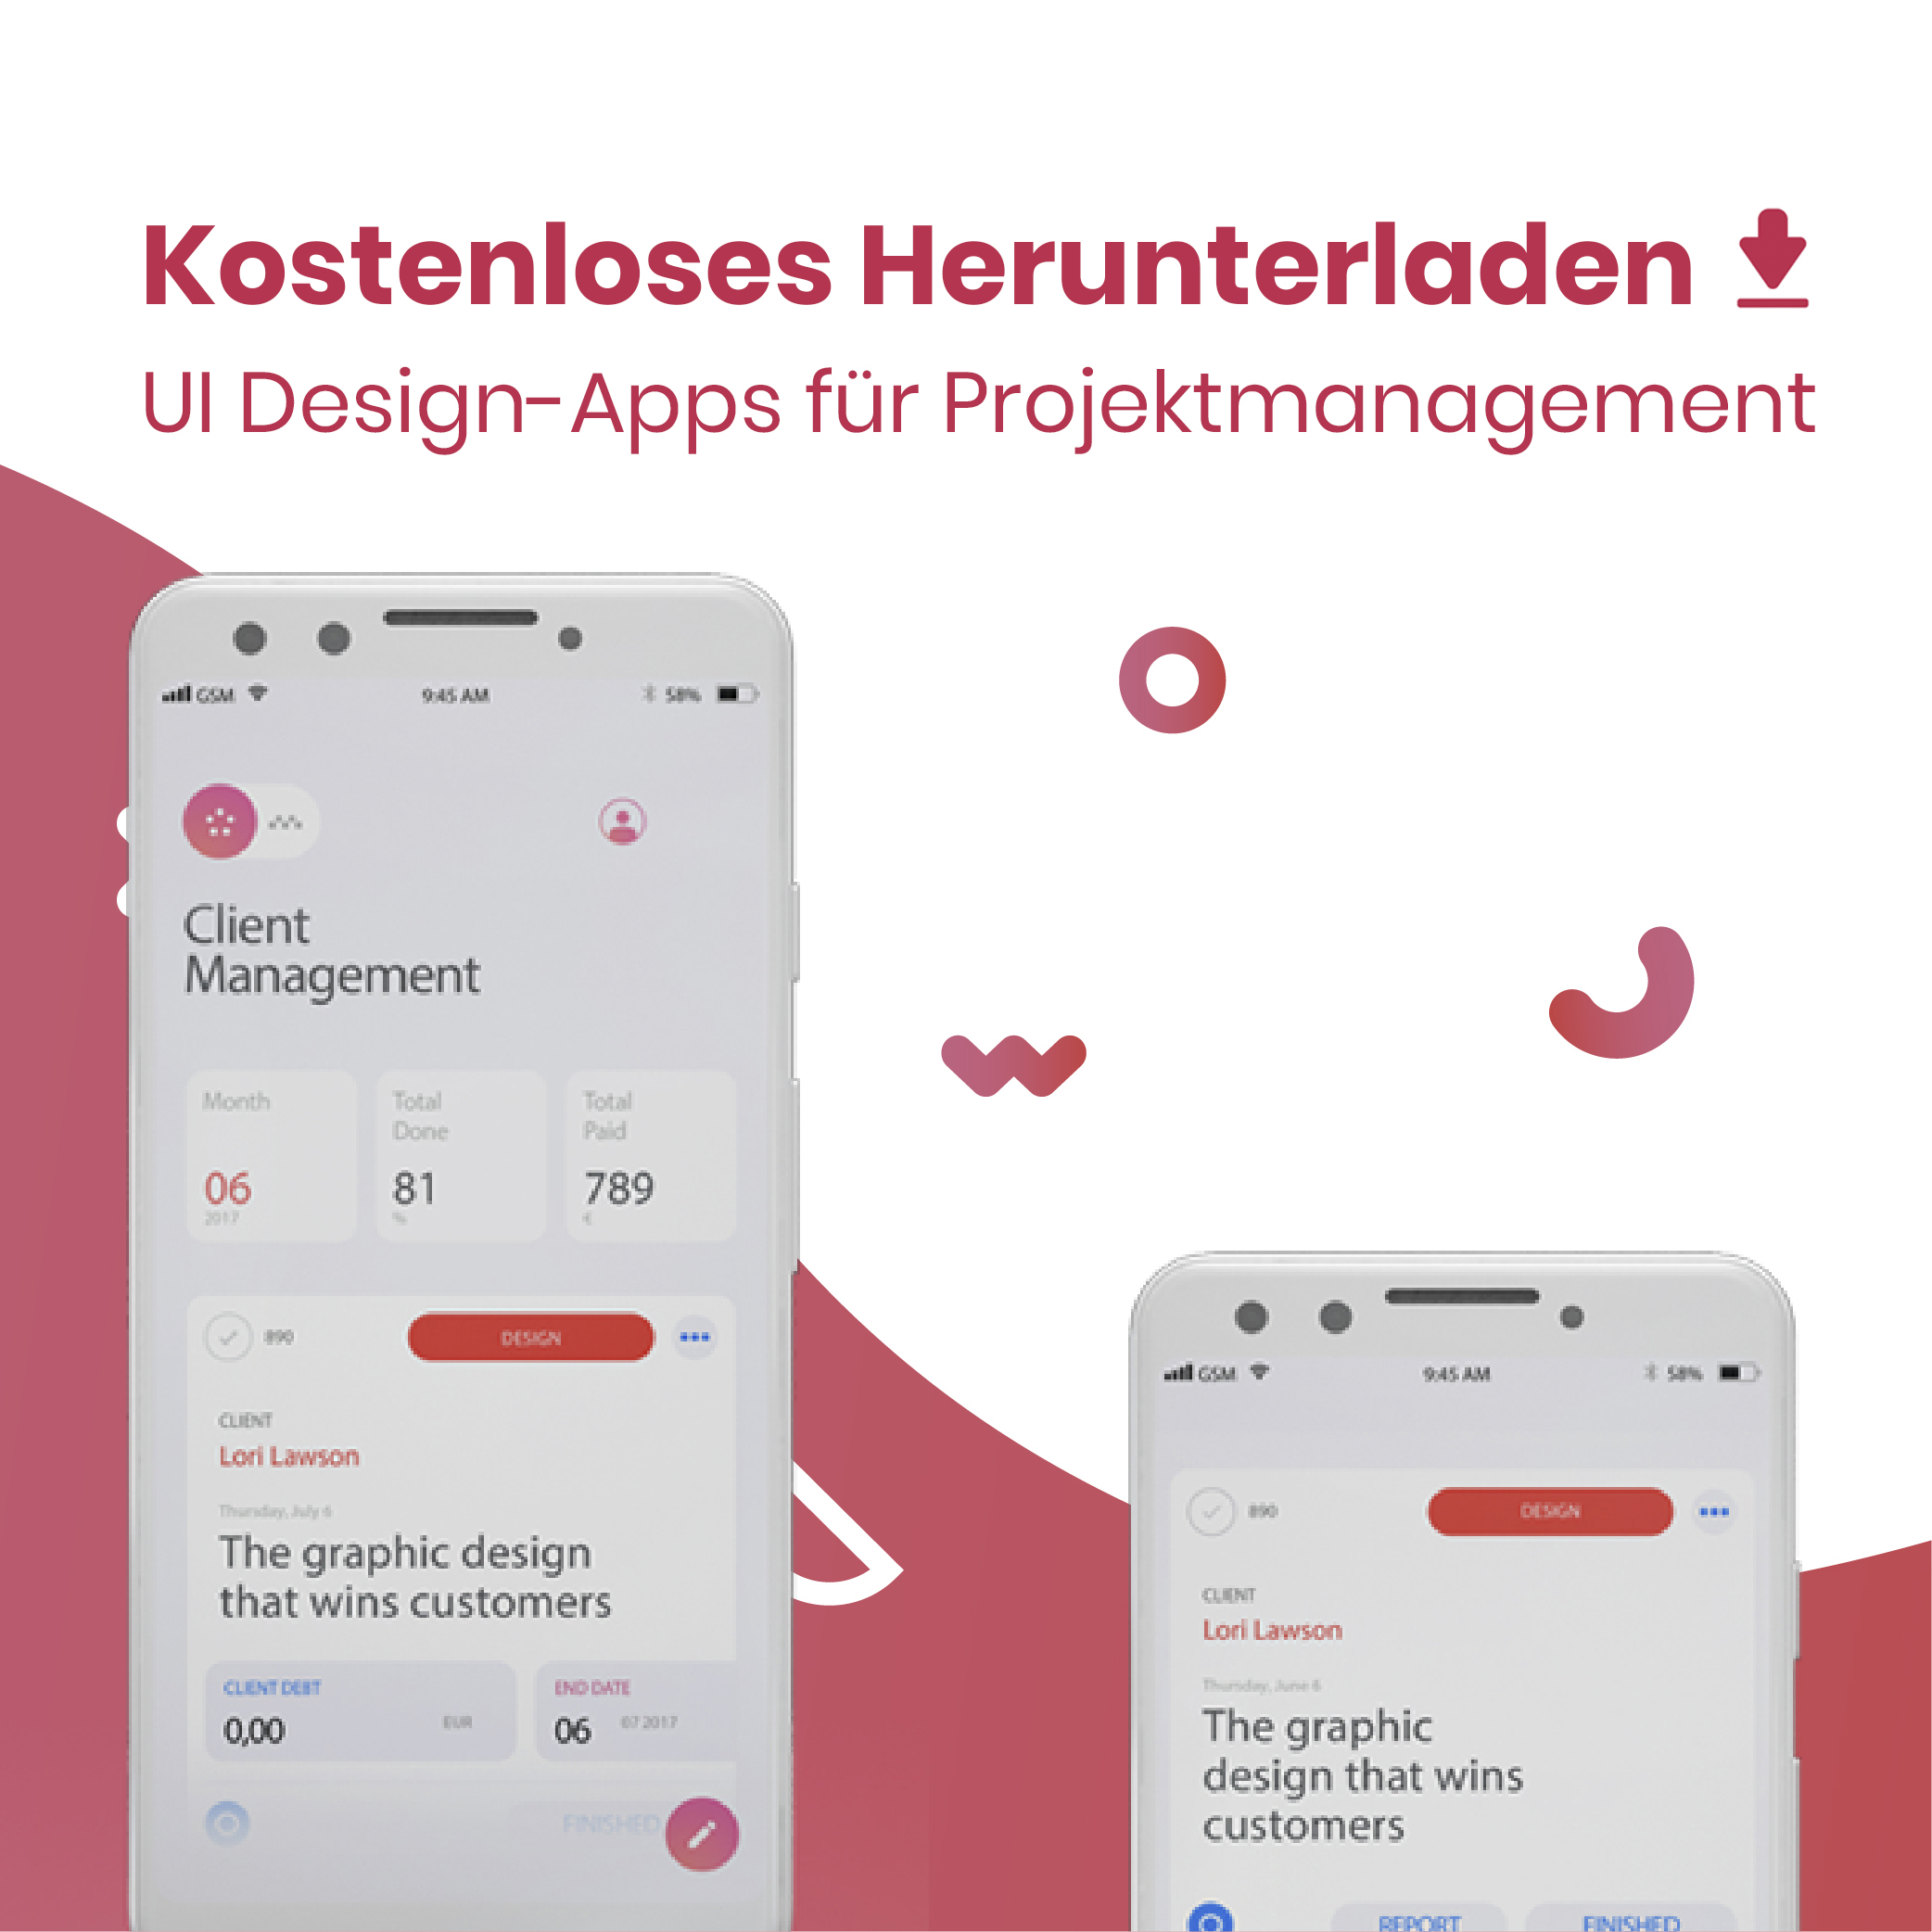 UI Design-Apps für Projektmanagement – kostenloses Herunterladen